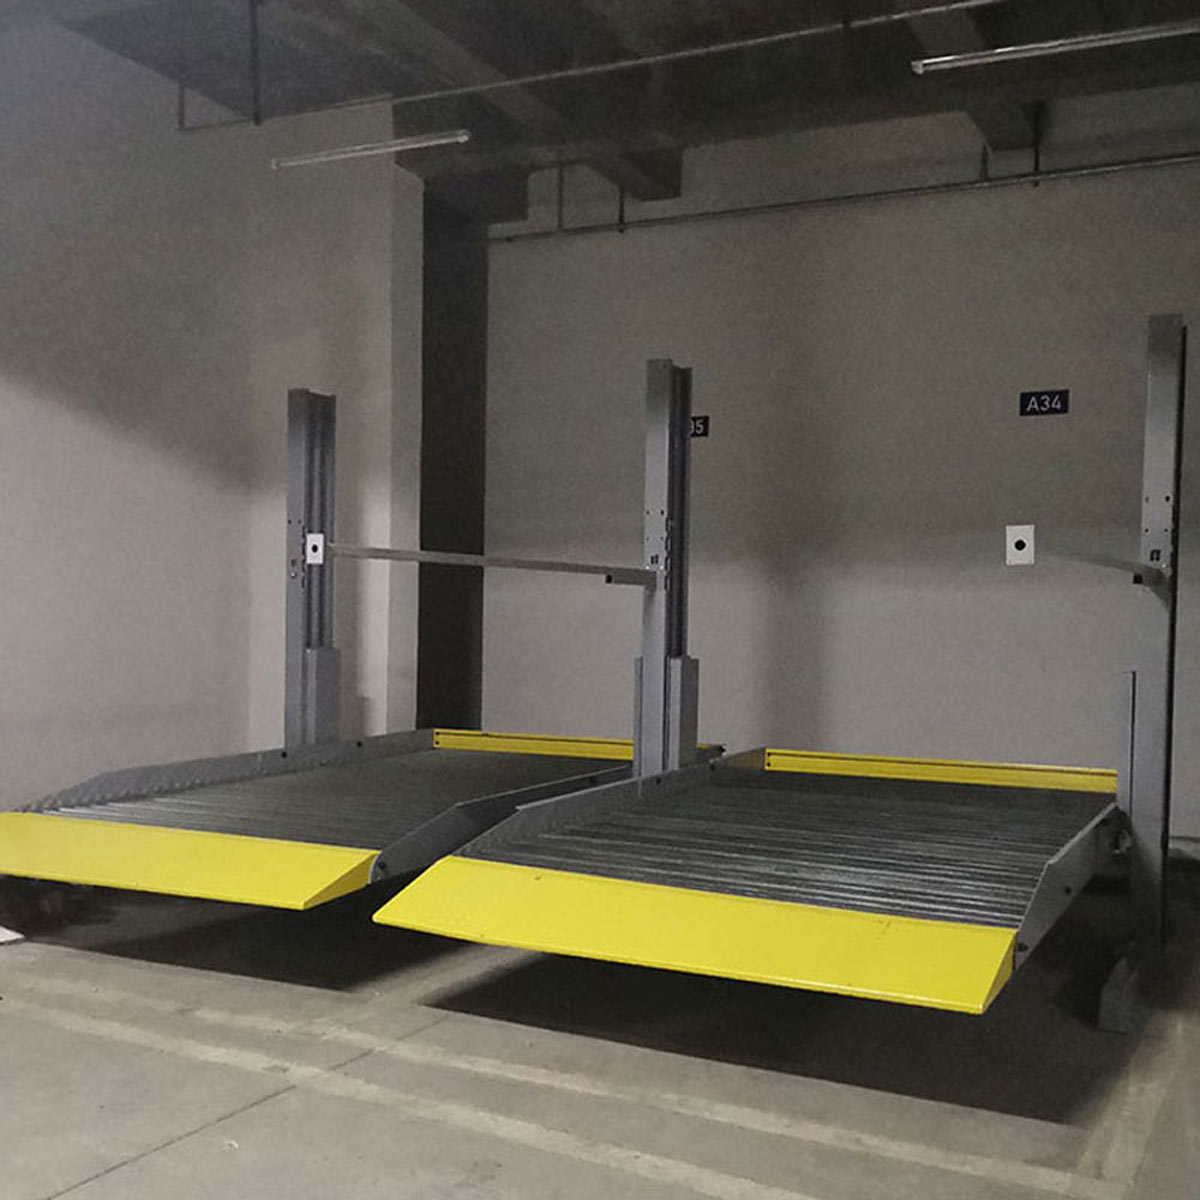 喜德自動化停車庫的設計思路